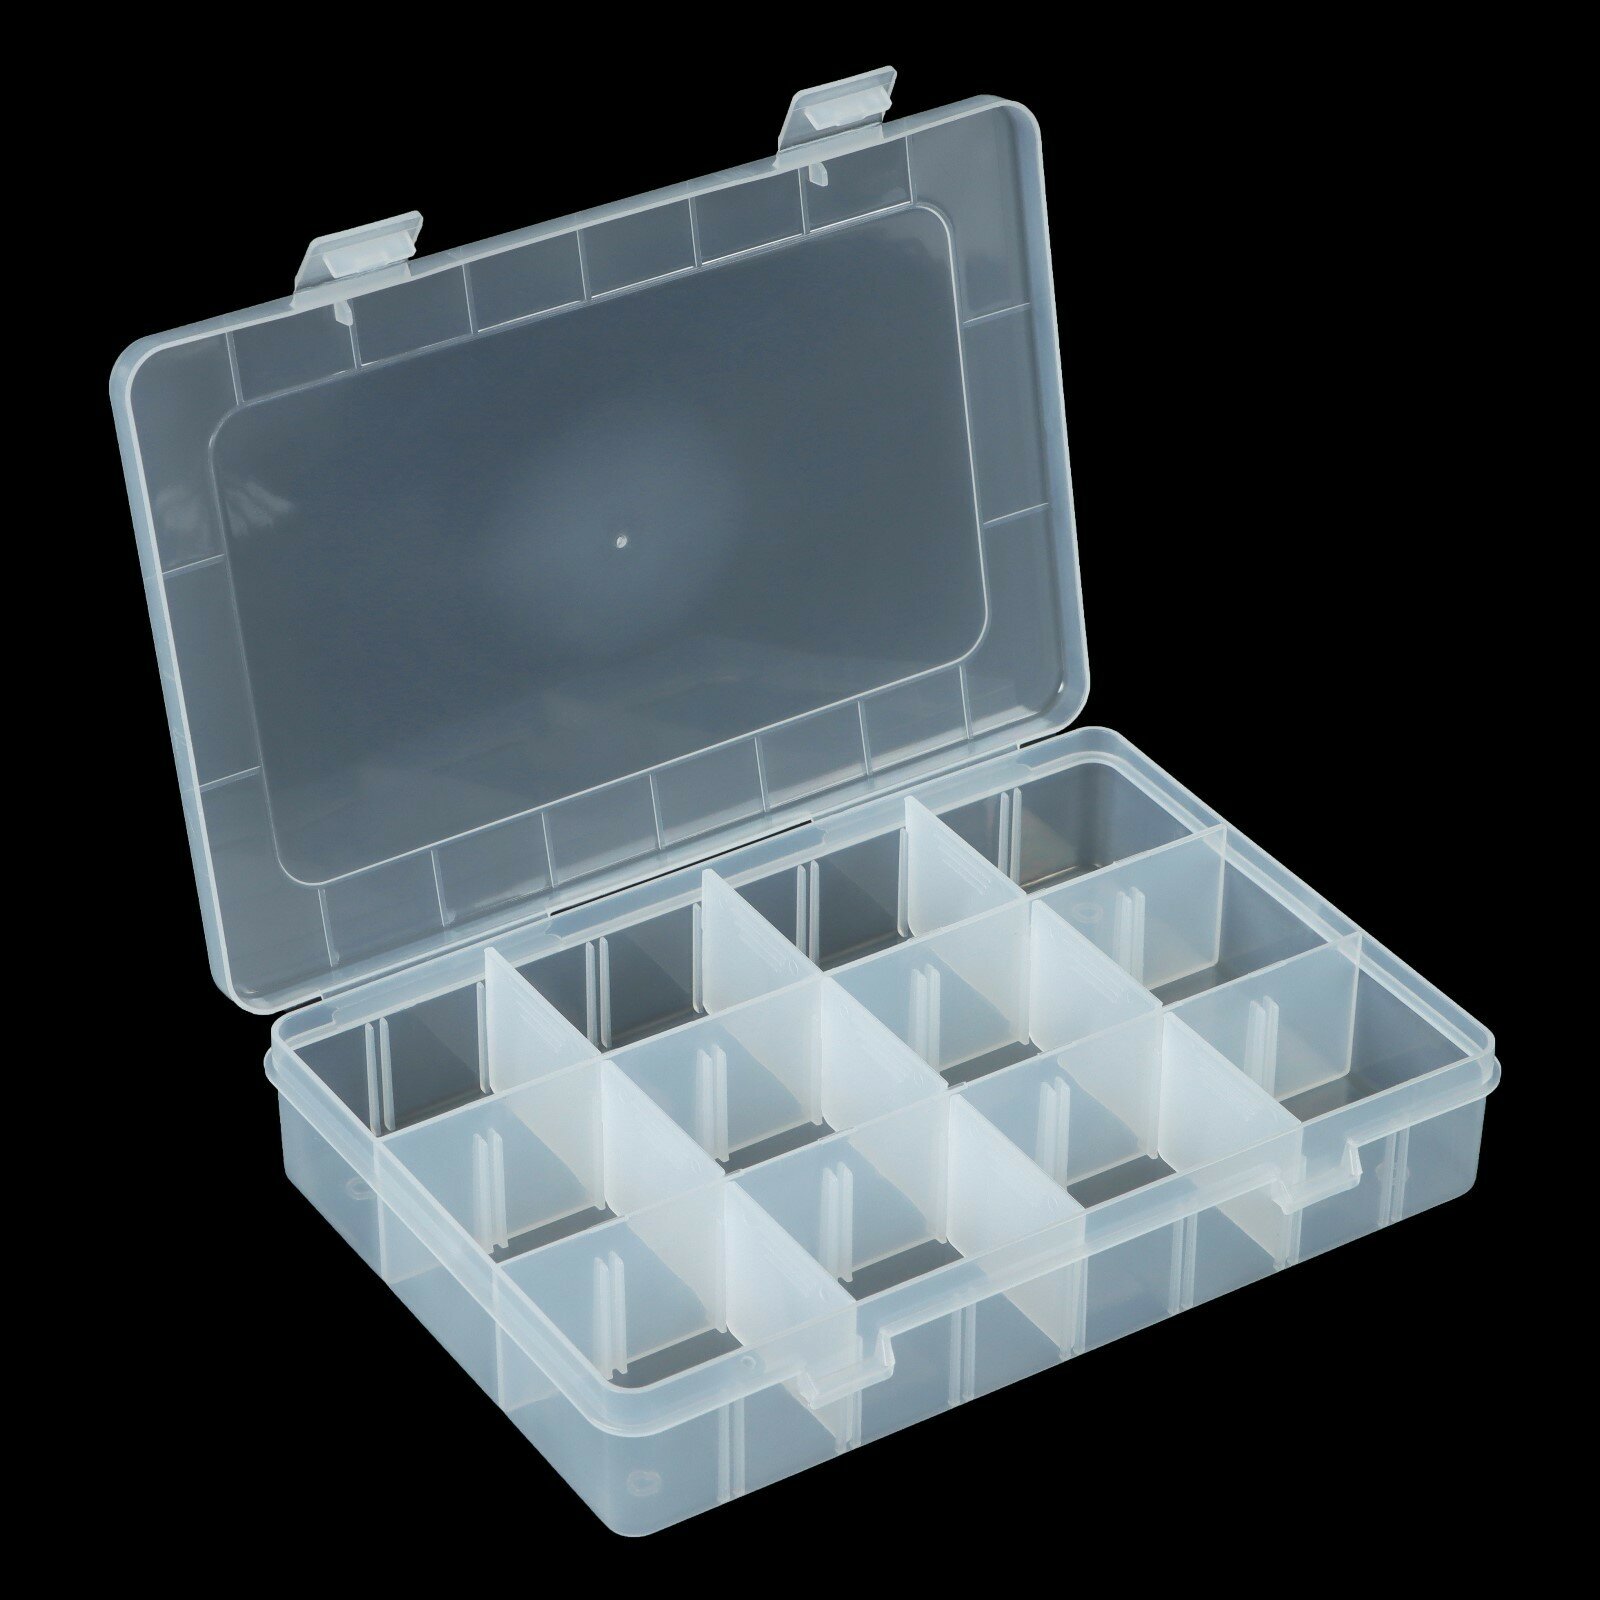 Коробка для рыболовных мелочей с регулируемыми ячейками К-63, 19.5х13.5х4 см, прозрачная